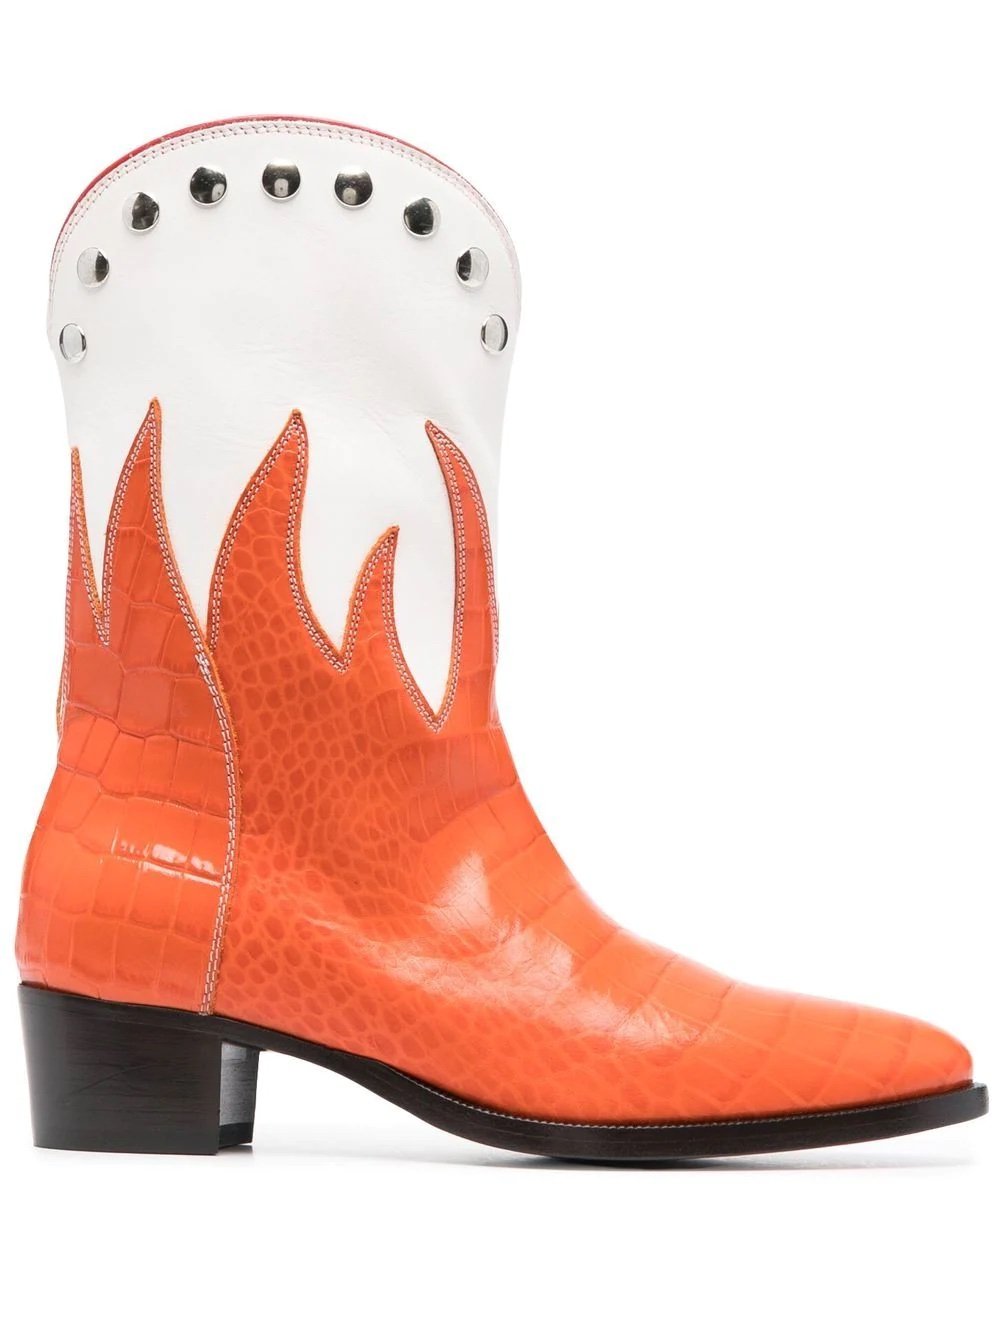 VIvienne Westwood cowboy boot.jpg